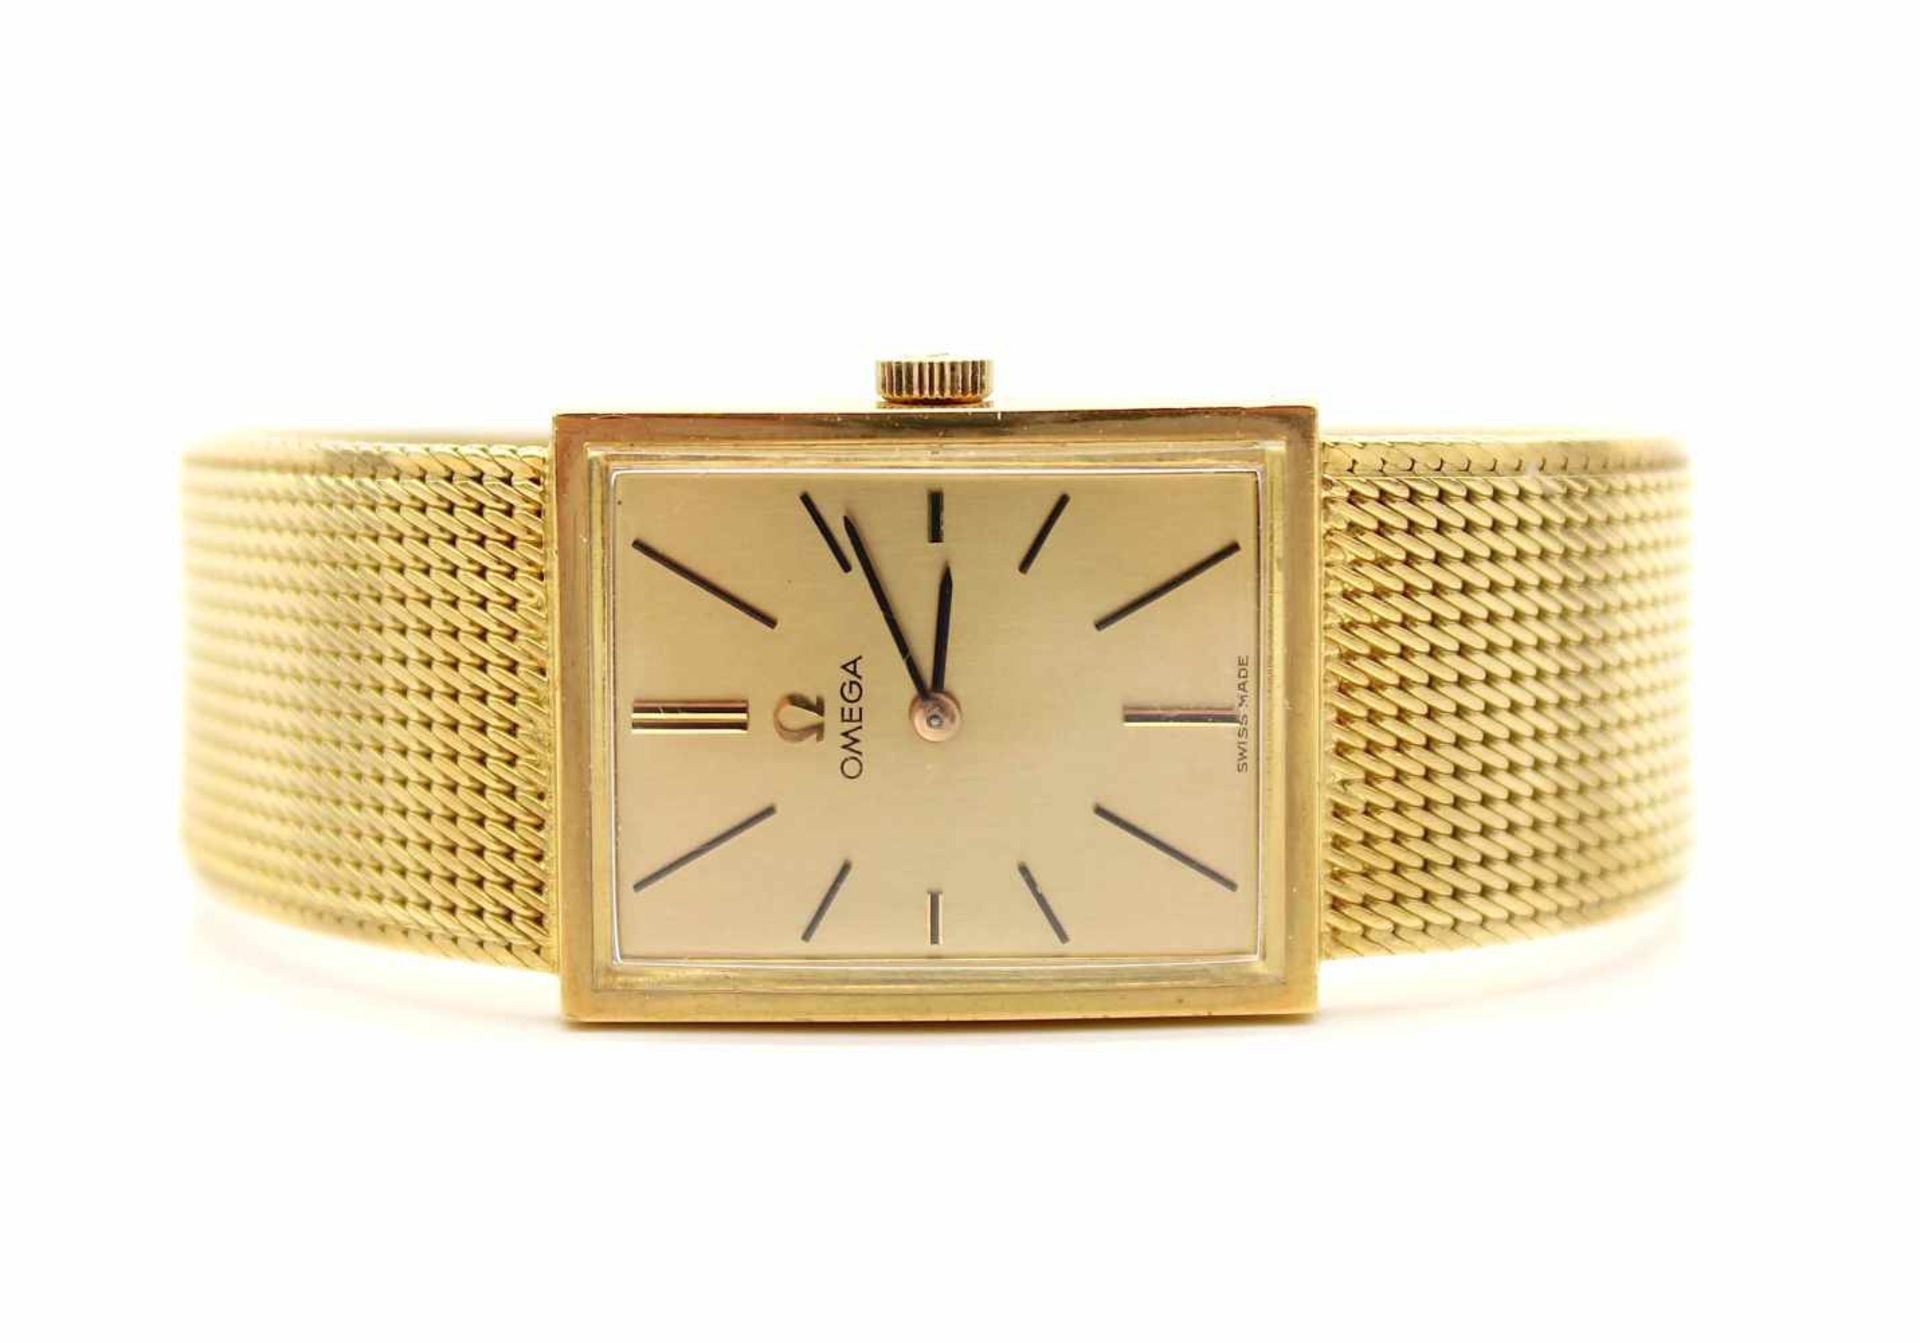 Armbanduhr Omega aus 750er Gold im Omega Etui. Die Uhr ist gangbar. Eine Revision wird empfohlen. - Image 2 of 4